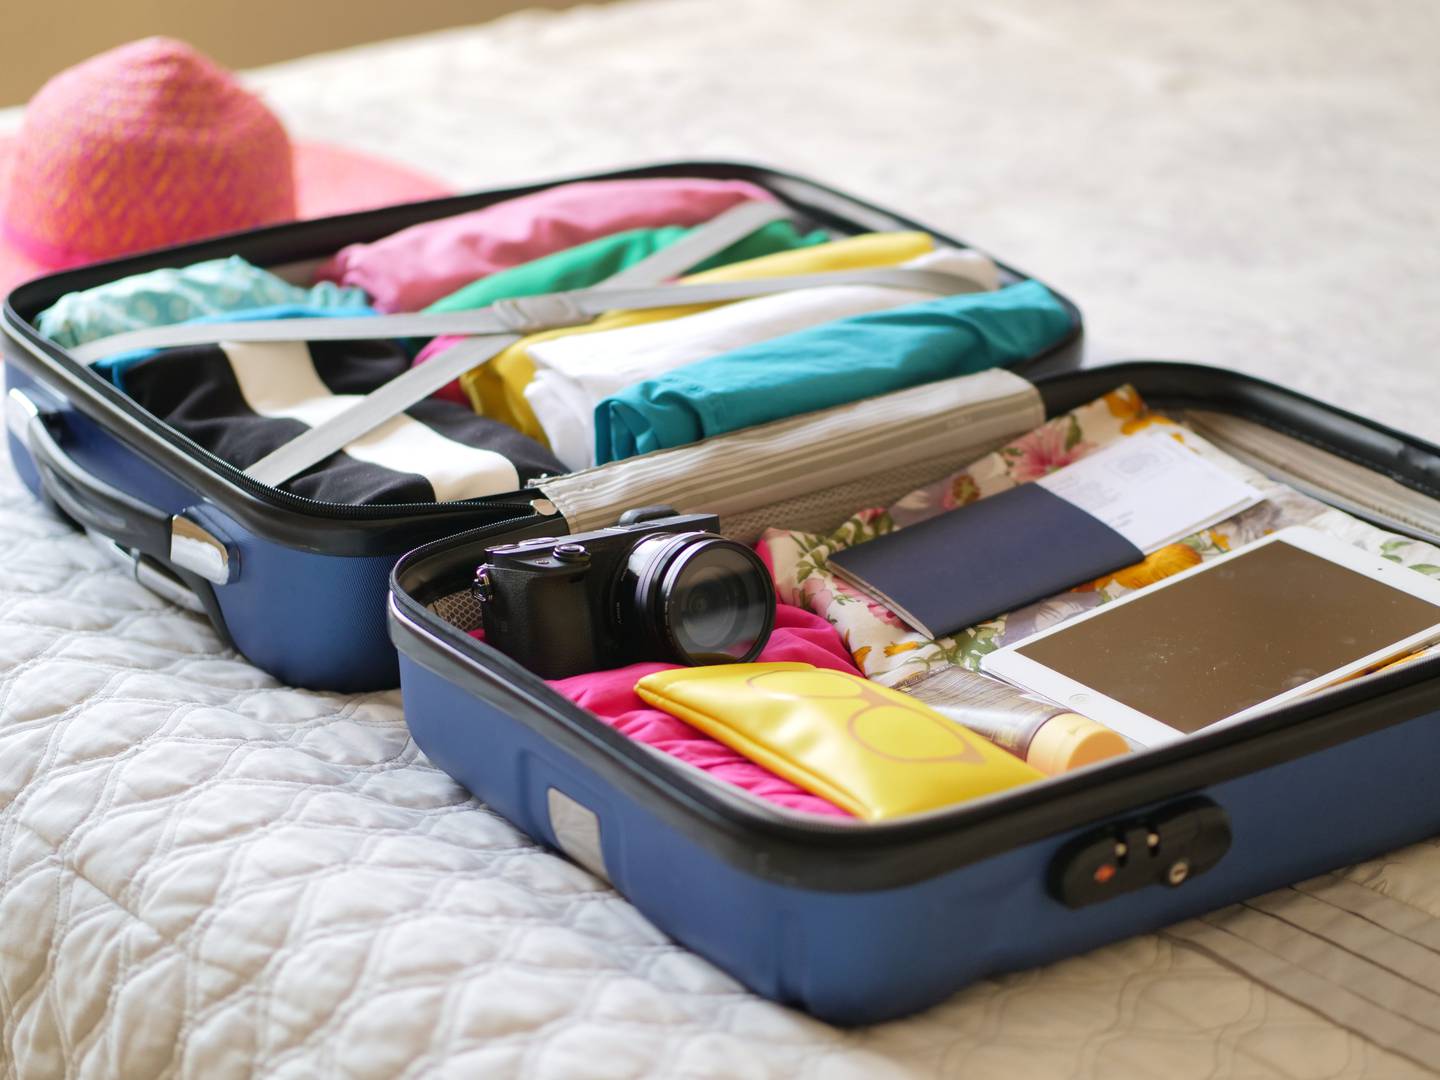 Truques para ter mais espaço na mala de viagem e aproveitar ainda mais